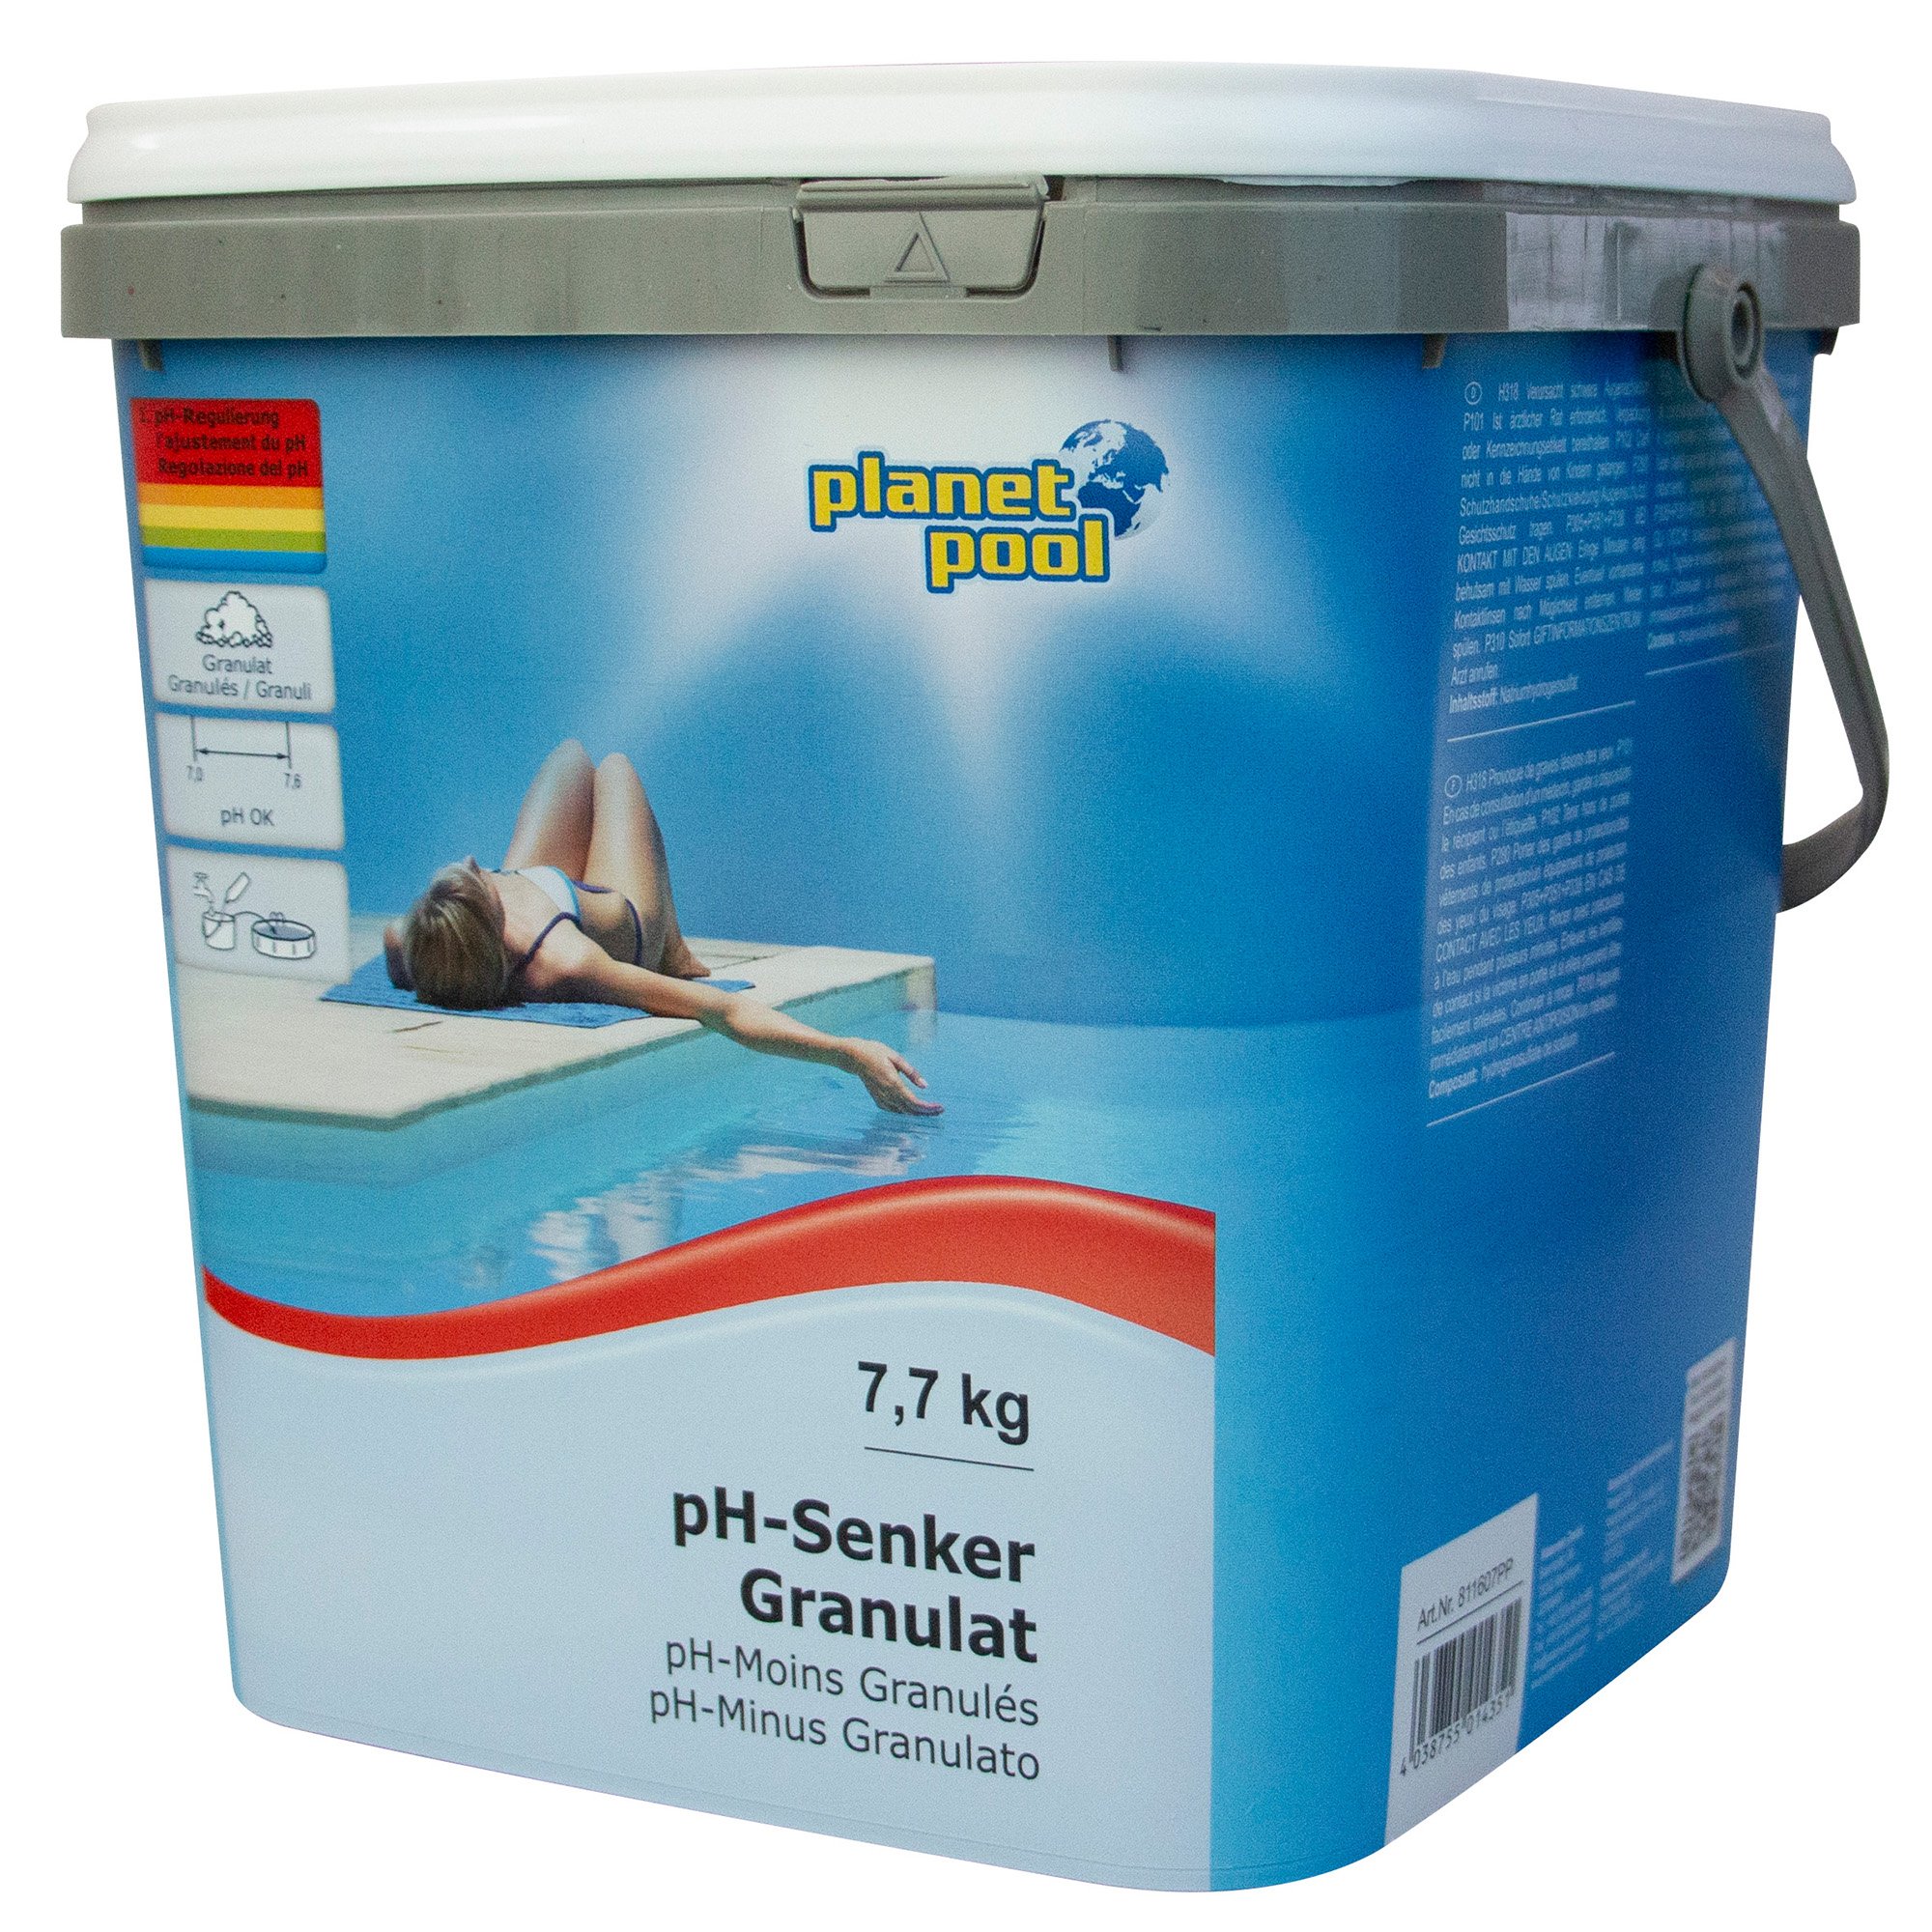 Planet Pool - pH-Senker Granulat, 7,7 kg